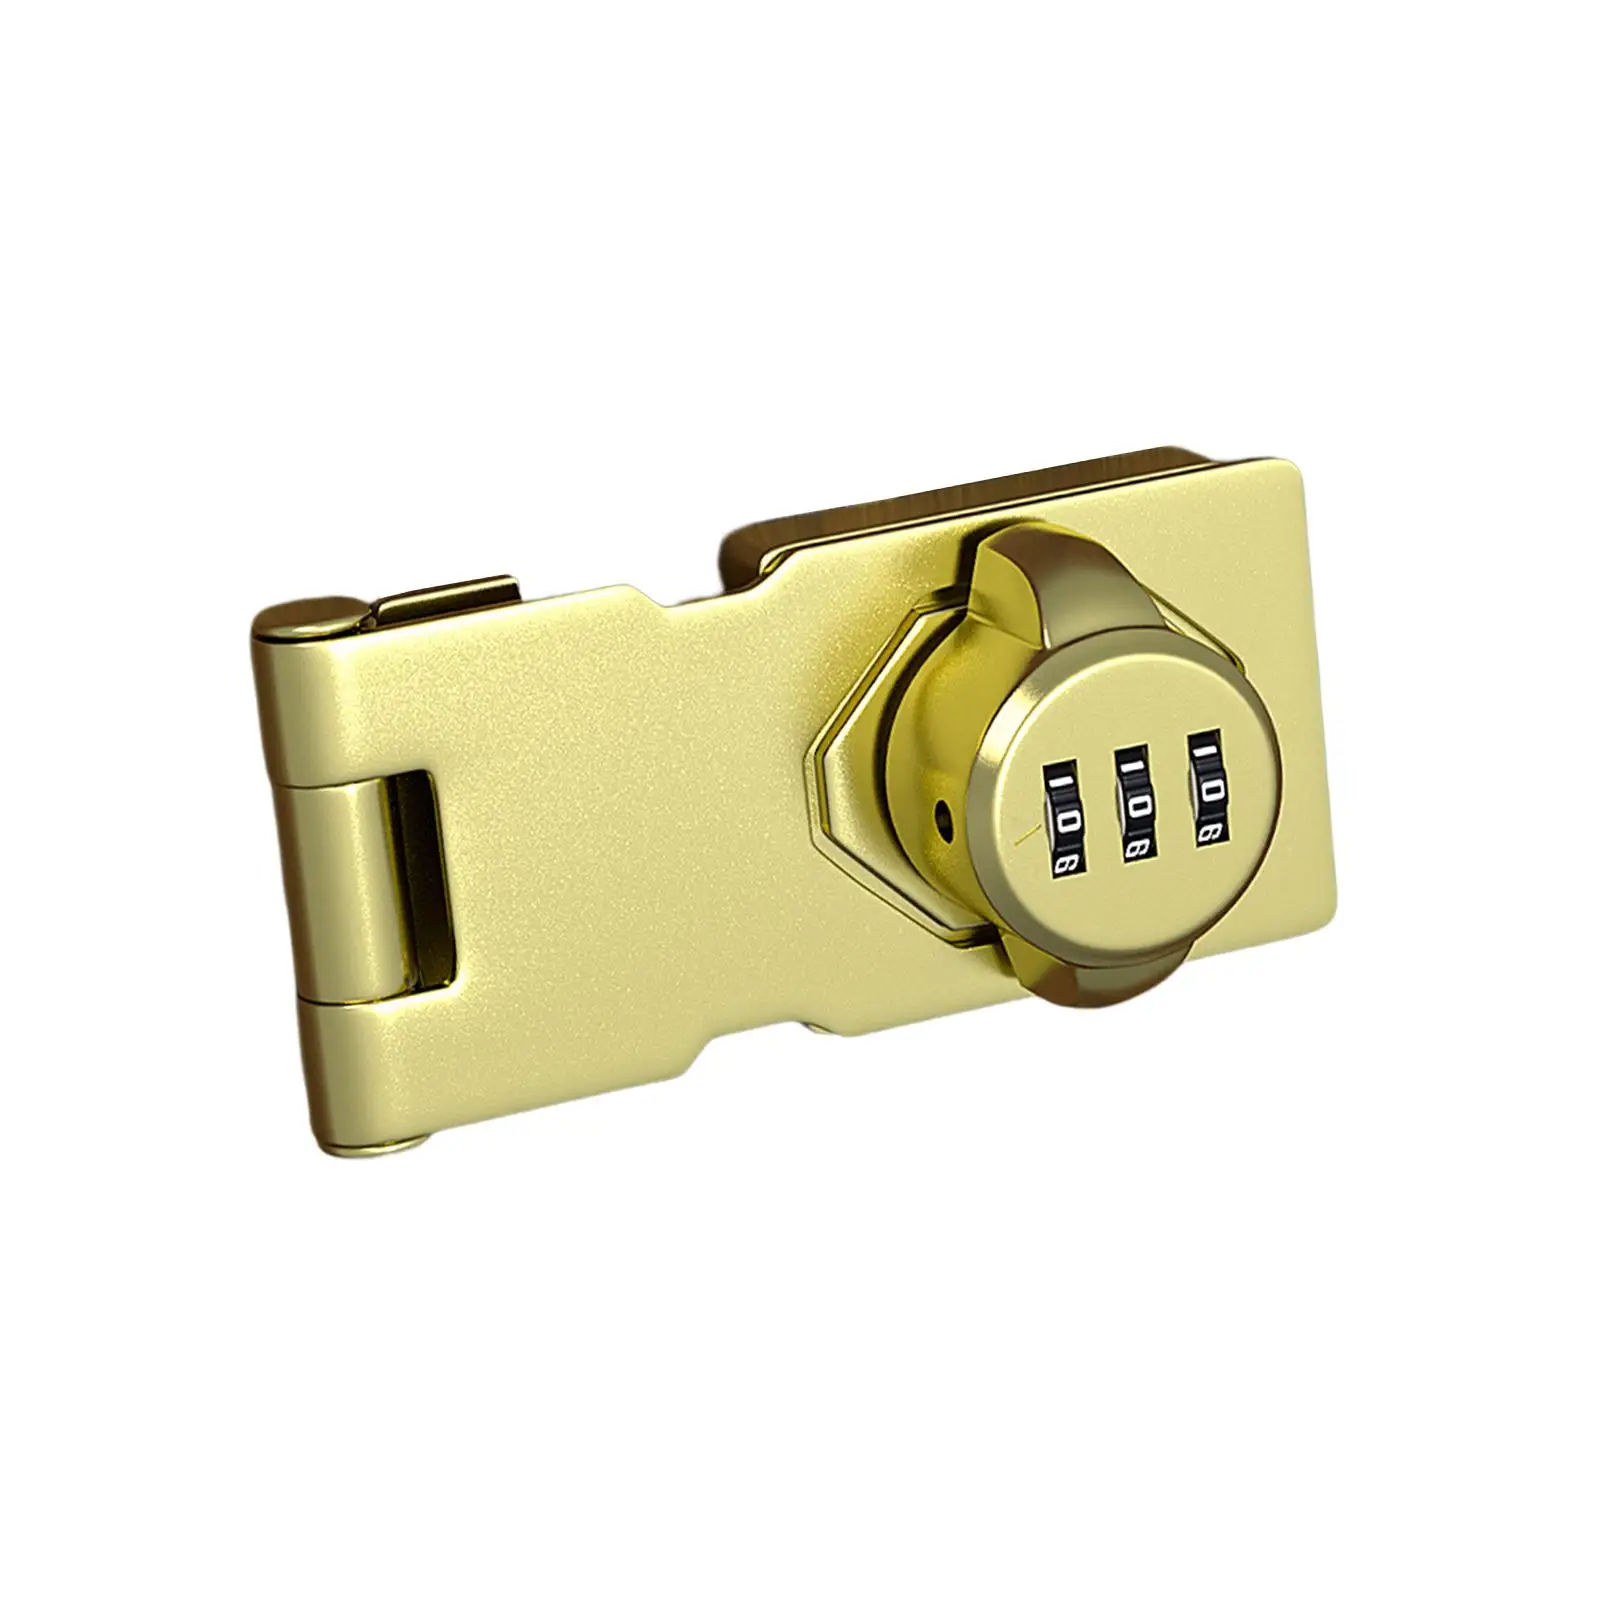 Mechanical Password Door Lock Refrigerator Lock for Bathroom Office Garage